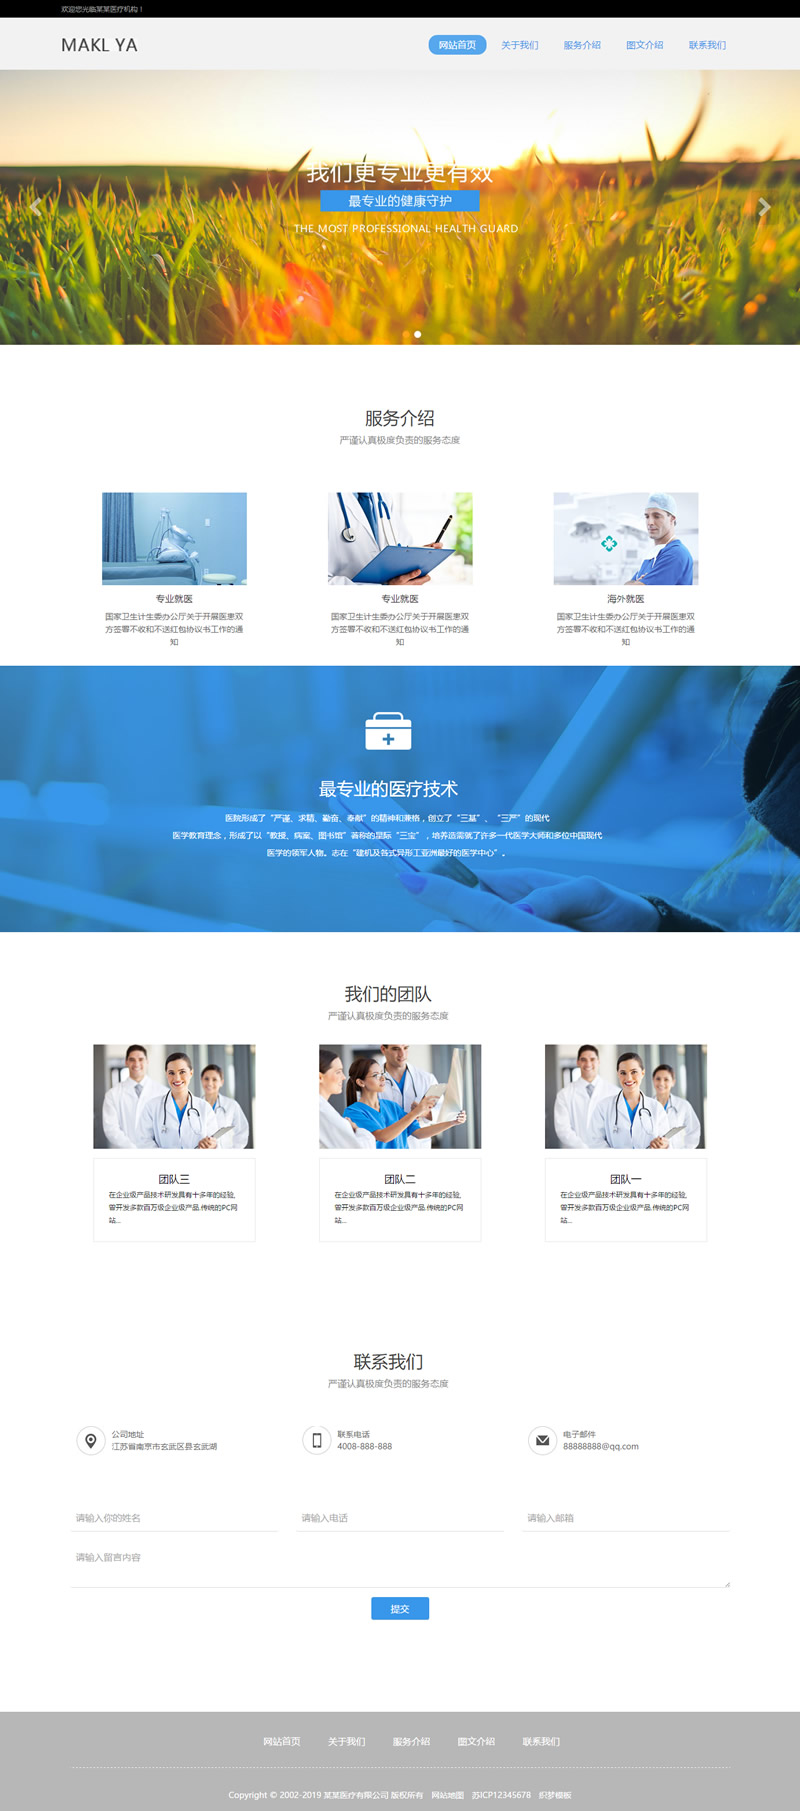 织梦CMS 响应式医疗机构网站 HTML5模板